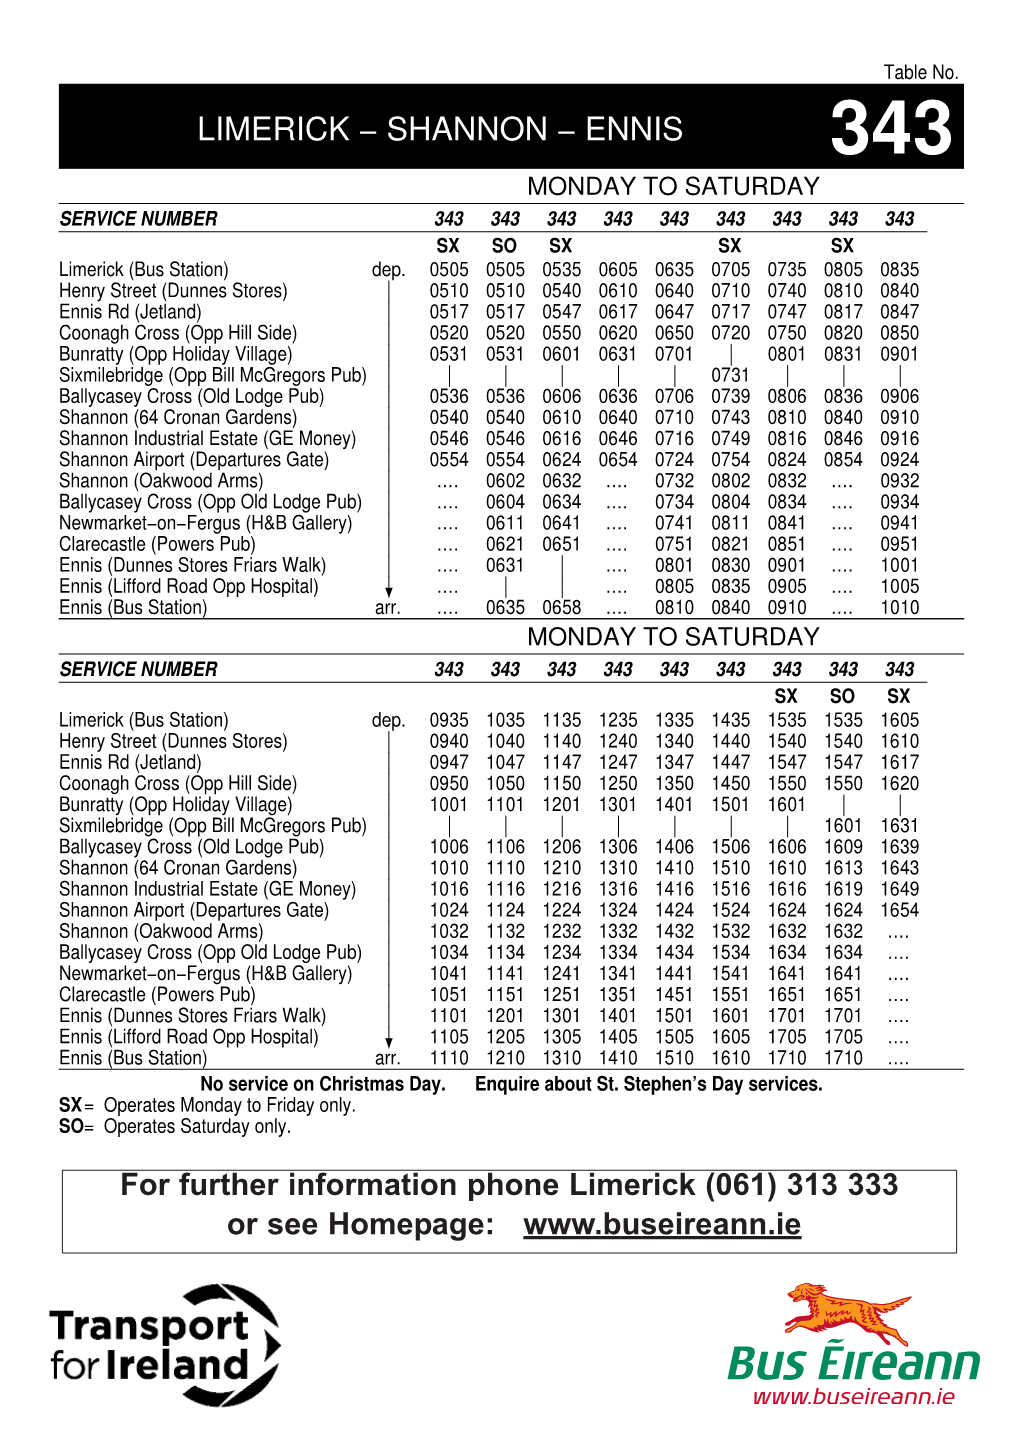 Shannon Airport Bus Eireann 343 Schedule